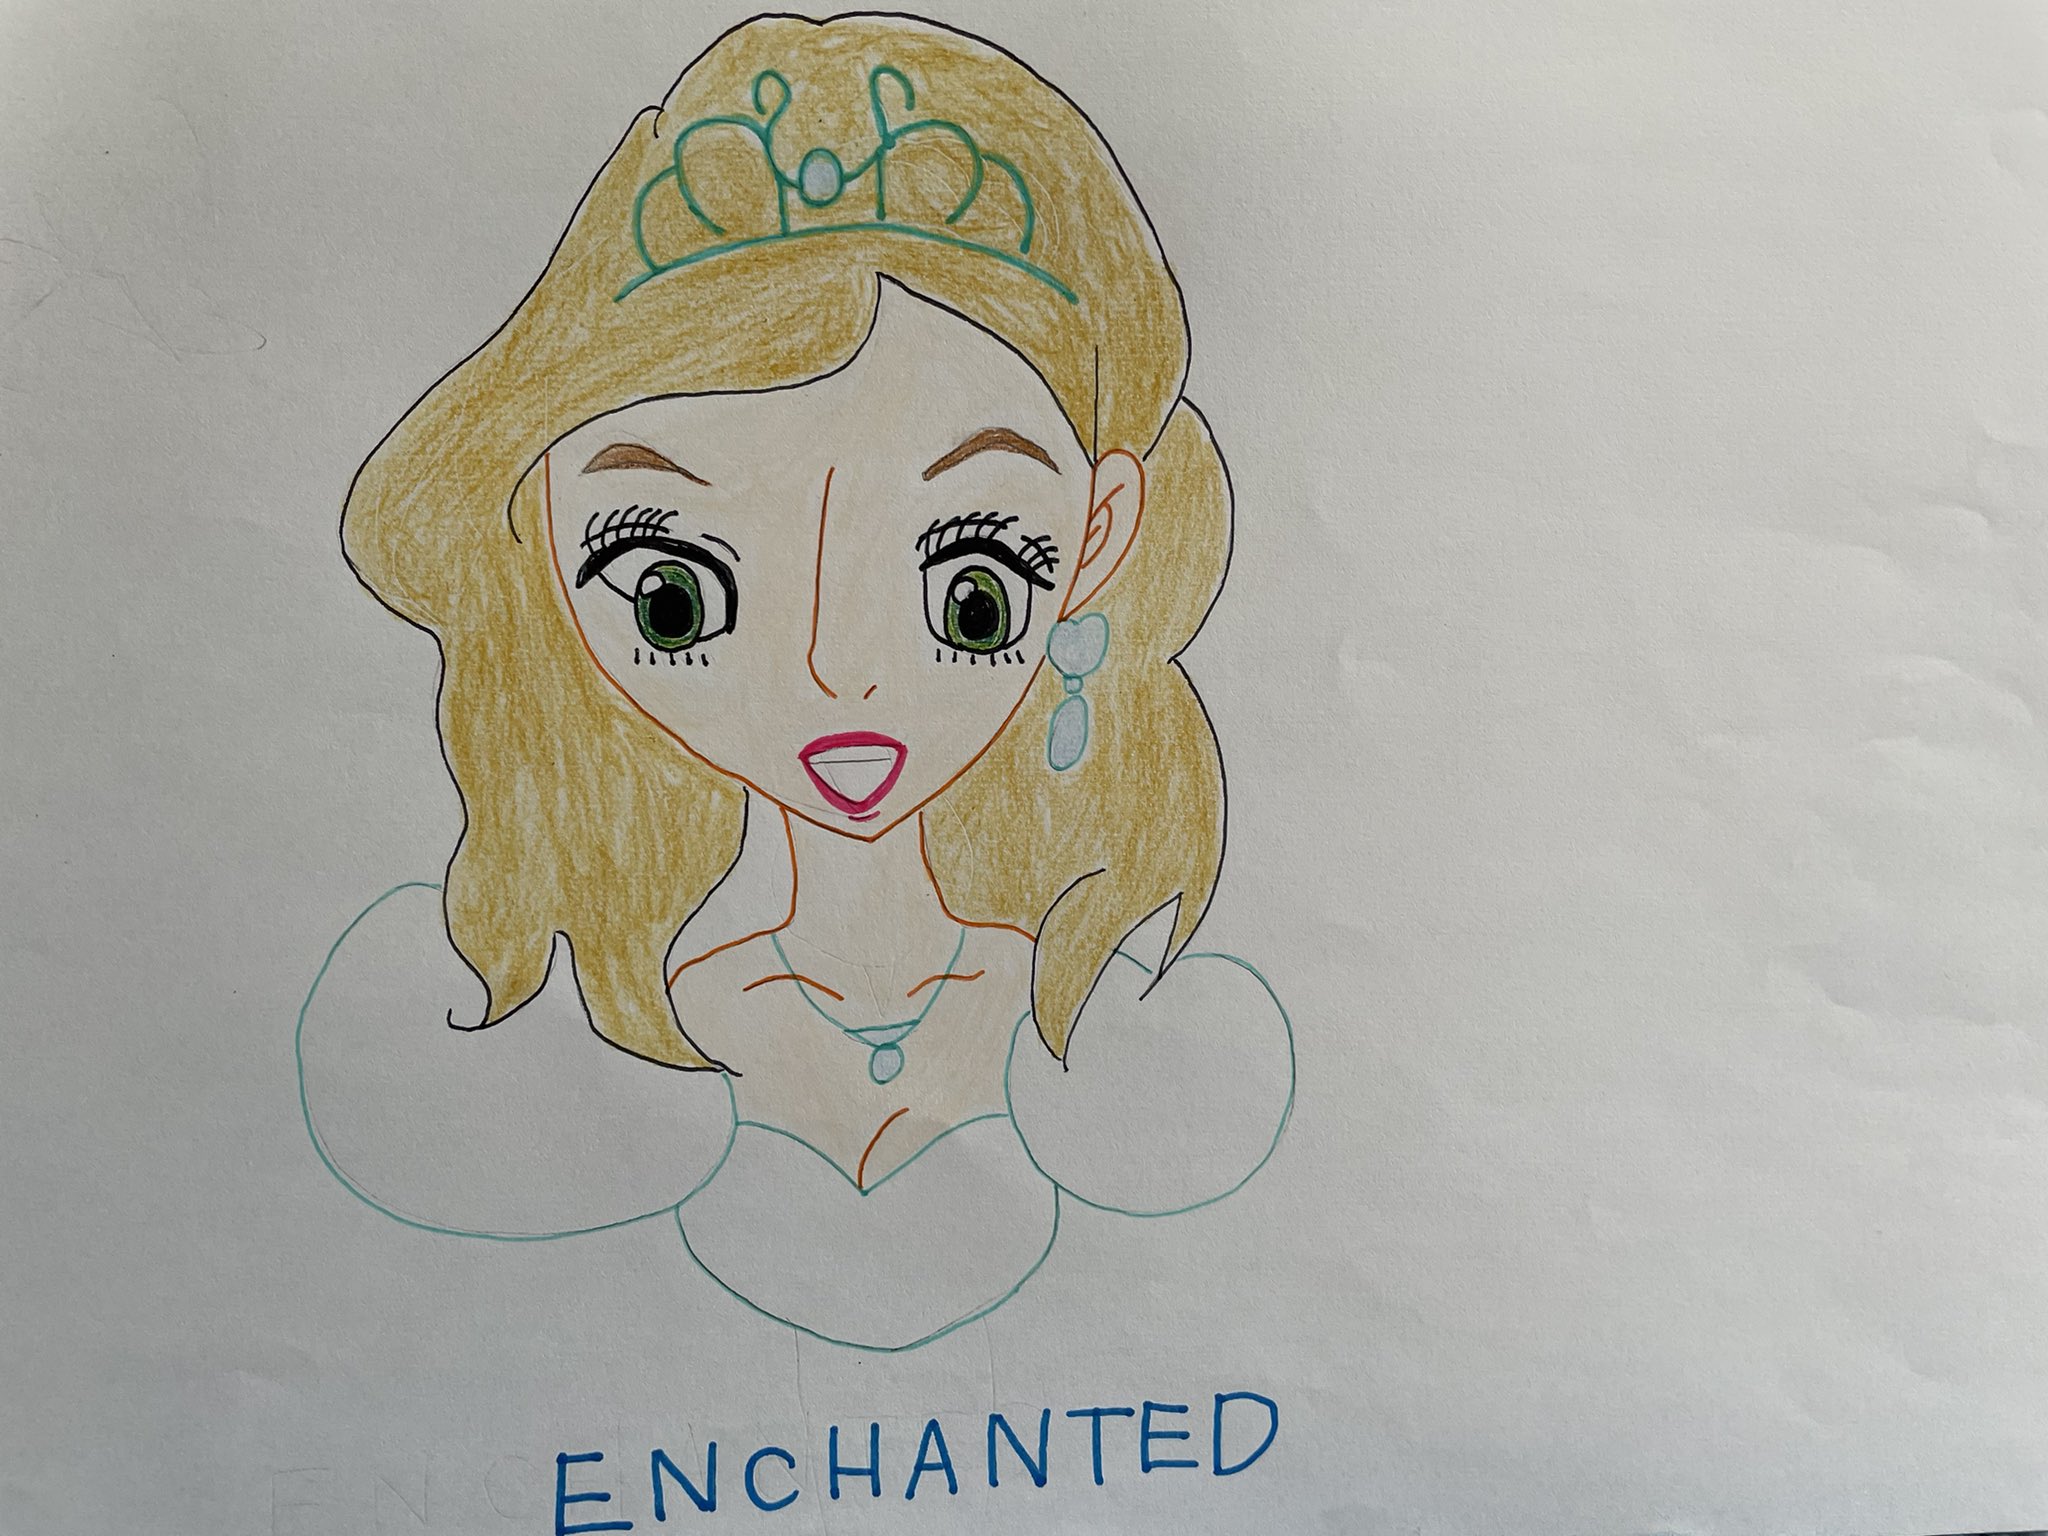 茉莉花 7月は低浮上 Enchanted 魔法にかけられて ジゼル ディズニープリンセス 色鉛筆画 色鉛筆イラスト T Co Nrhtdonrta Twitter